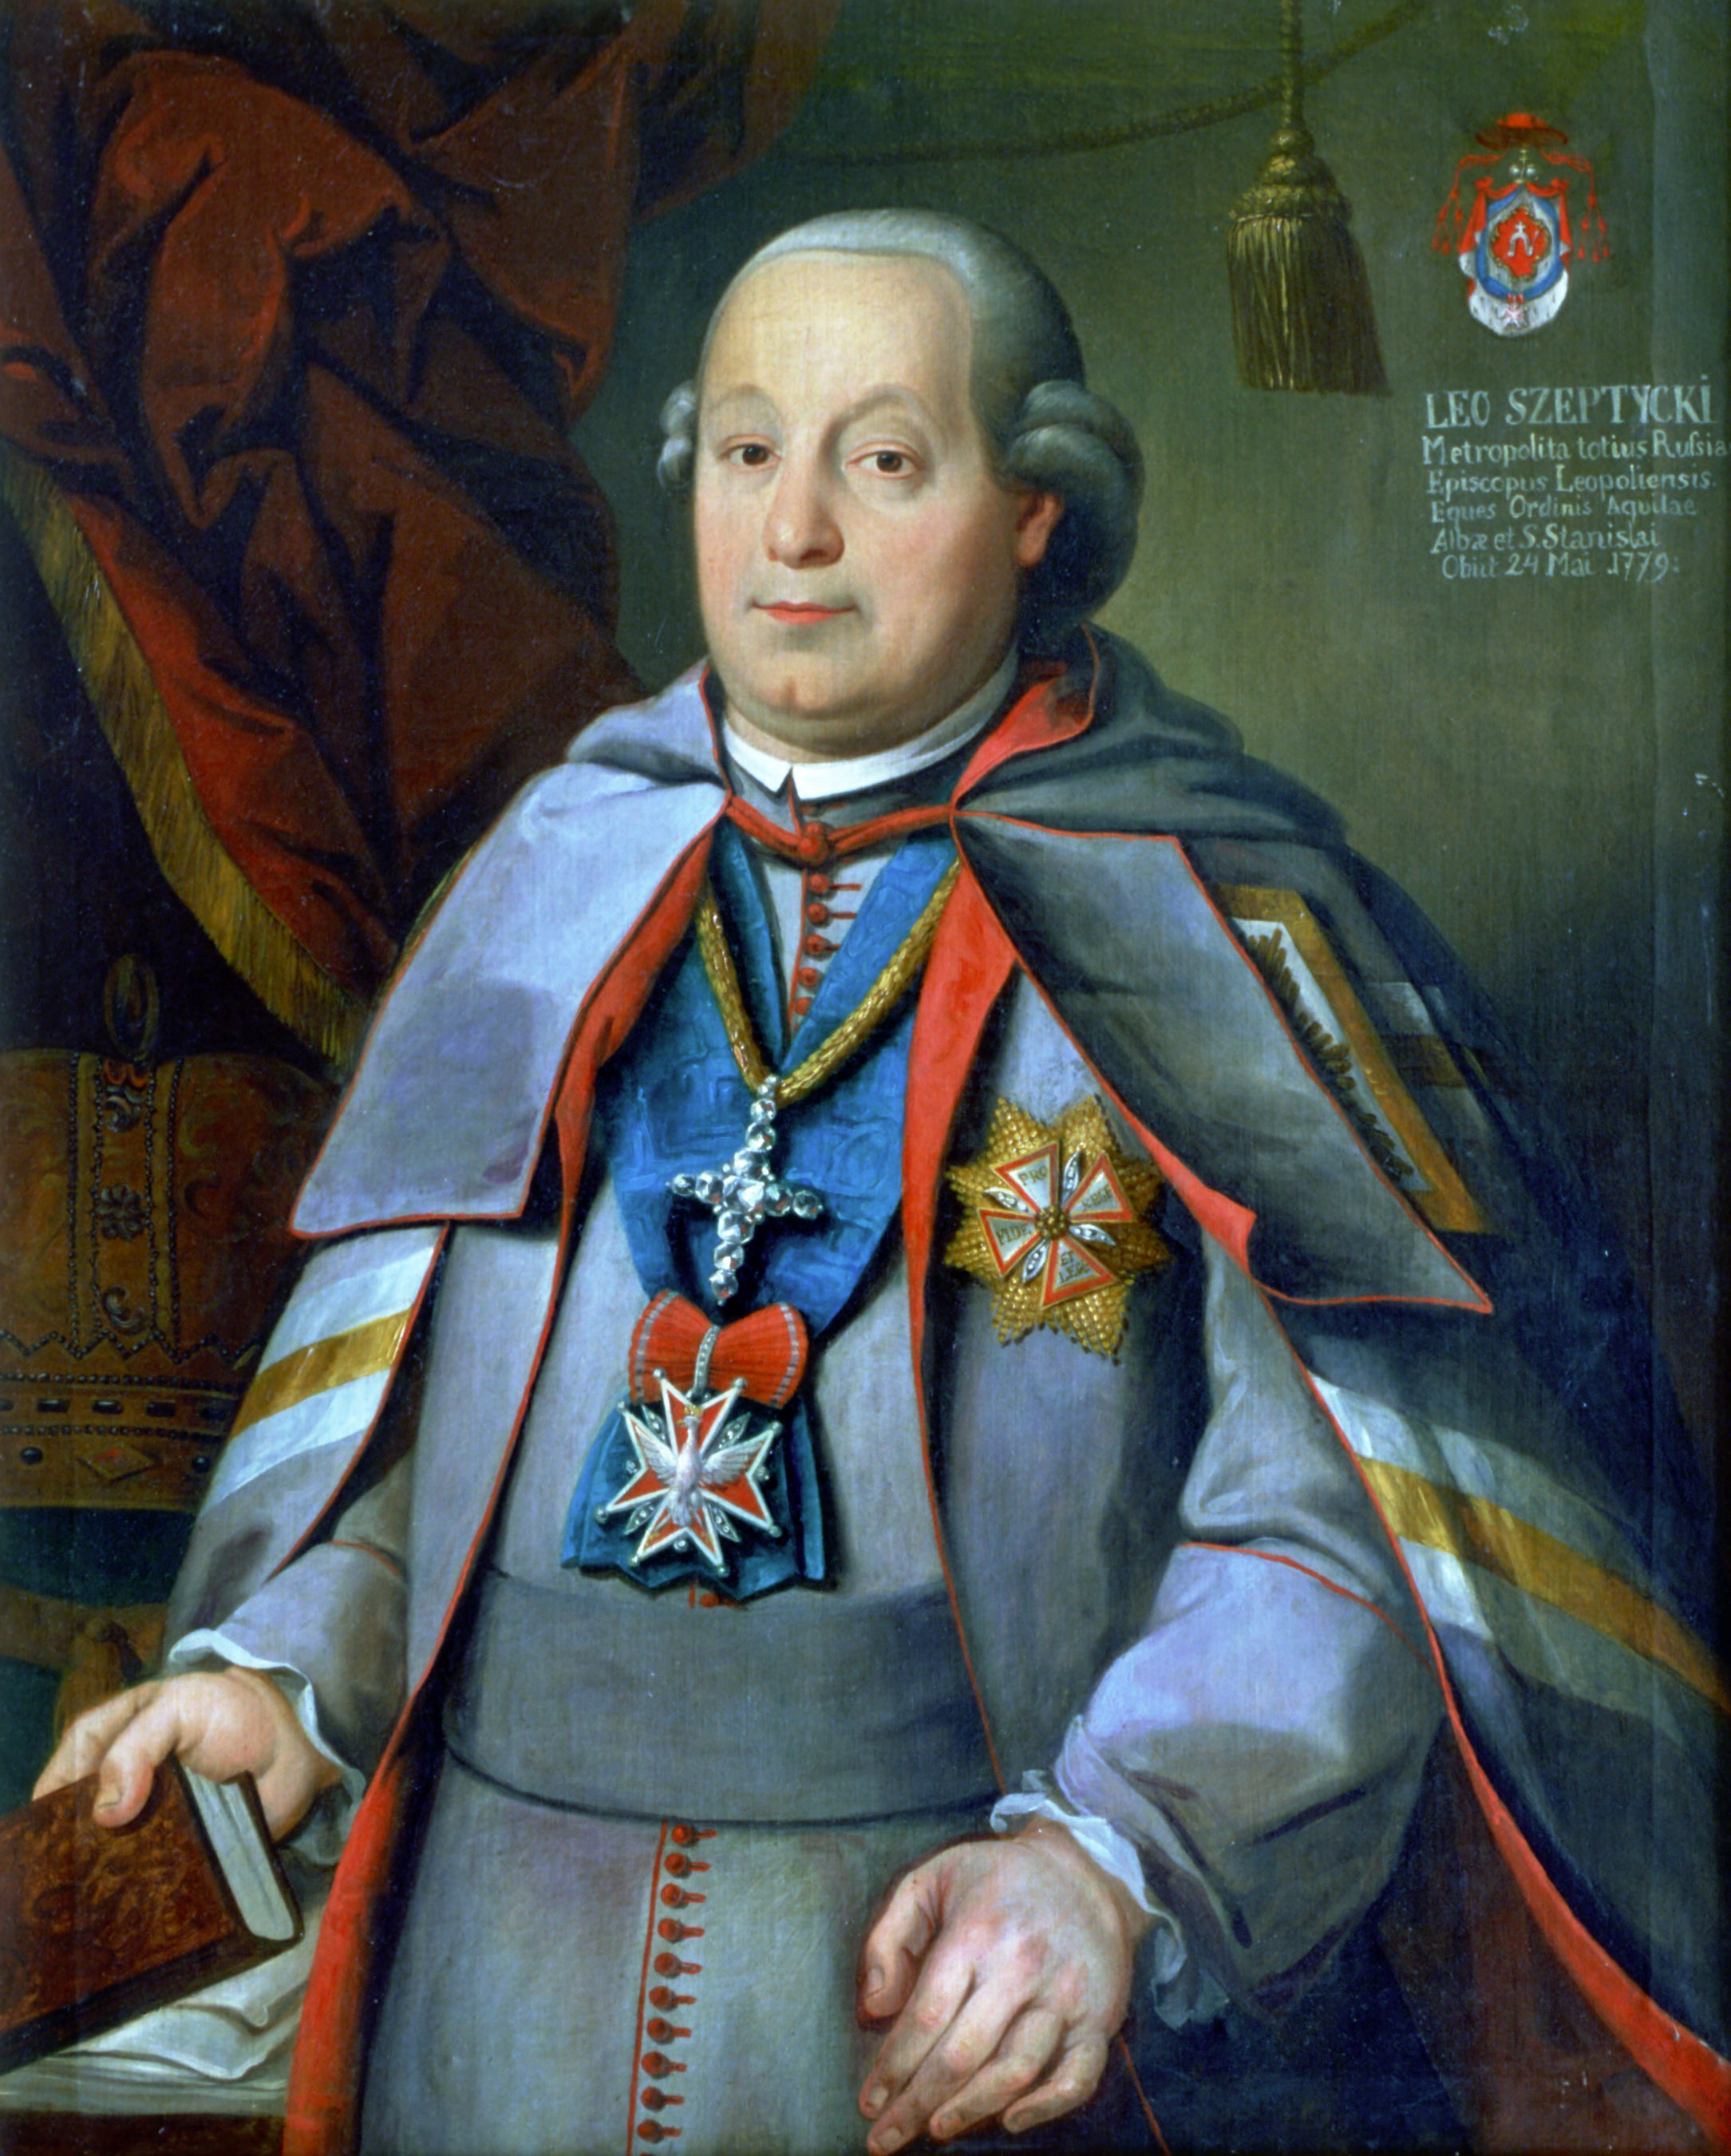 Долинский. Портрет митрополита Льва Шептицкого. Около 1775-1779